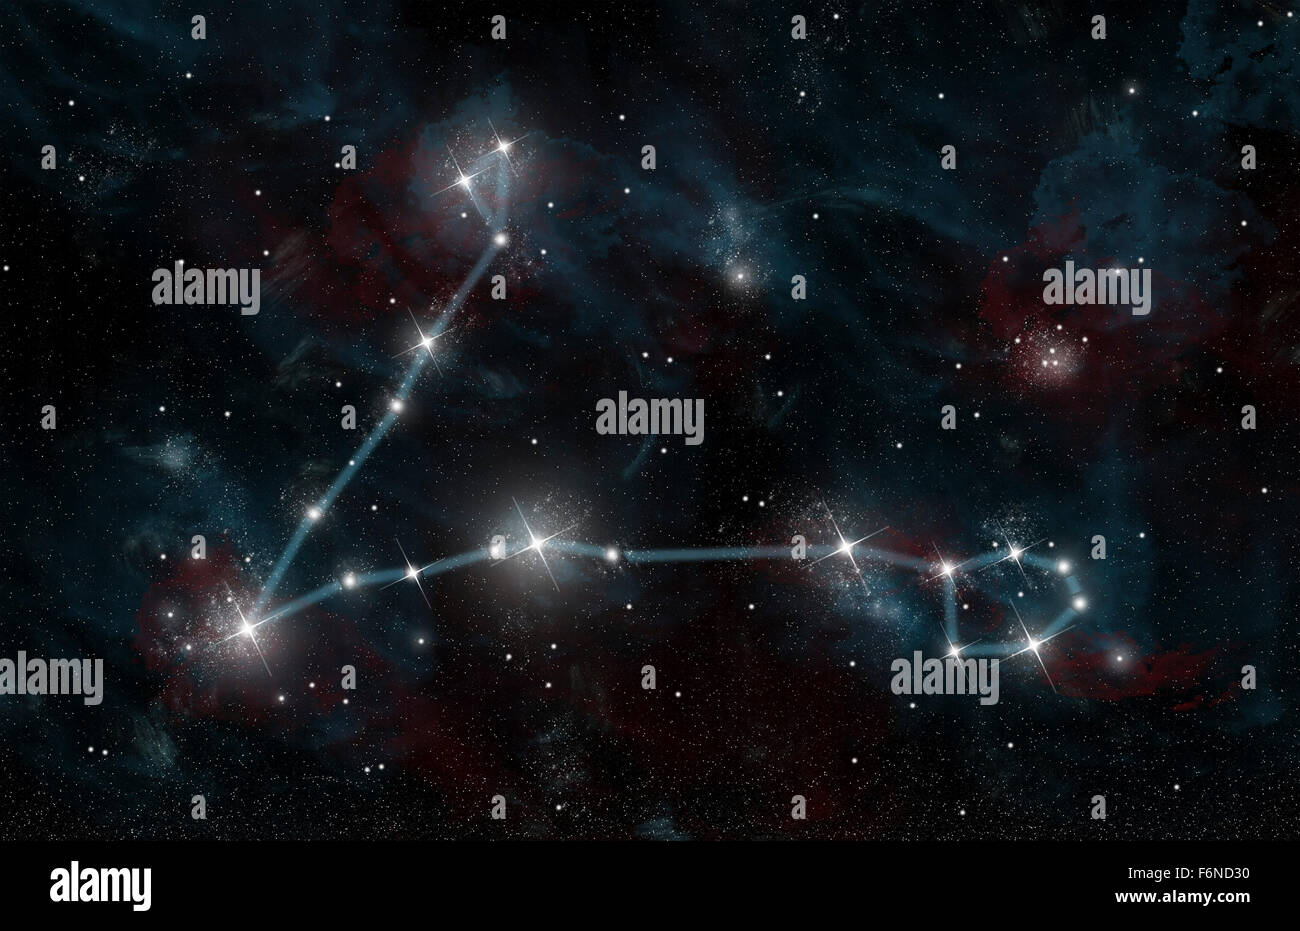 L'inscription d'un artiste de la constellation des Poissons les poissons. La constellation comprend l'étoile Alpha Piscium et Eta Piscium. Banque D'Images